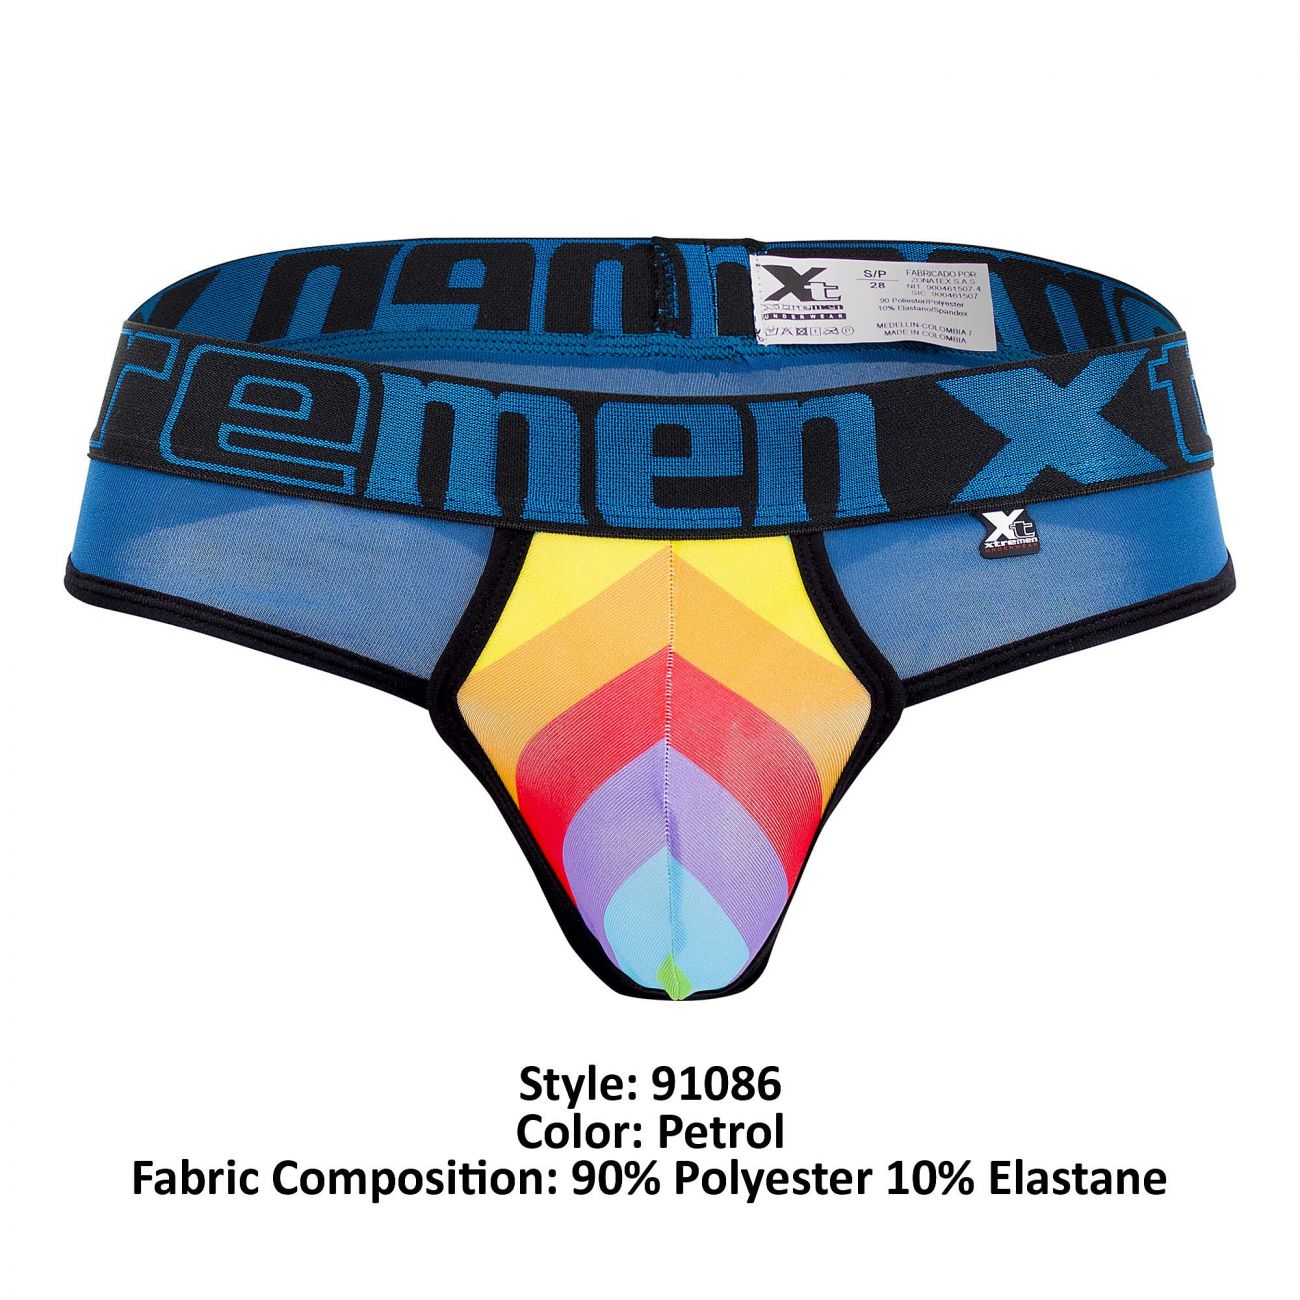 Xtremen 91086 Microfiber Pride Thongs Petrol